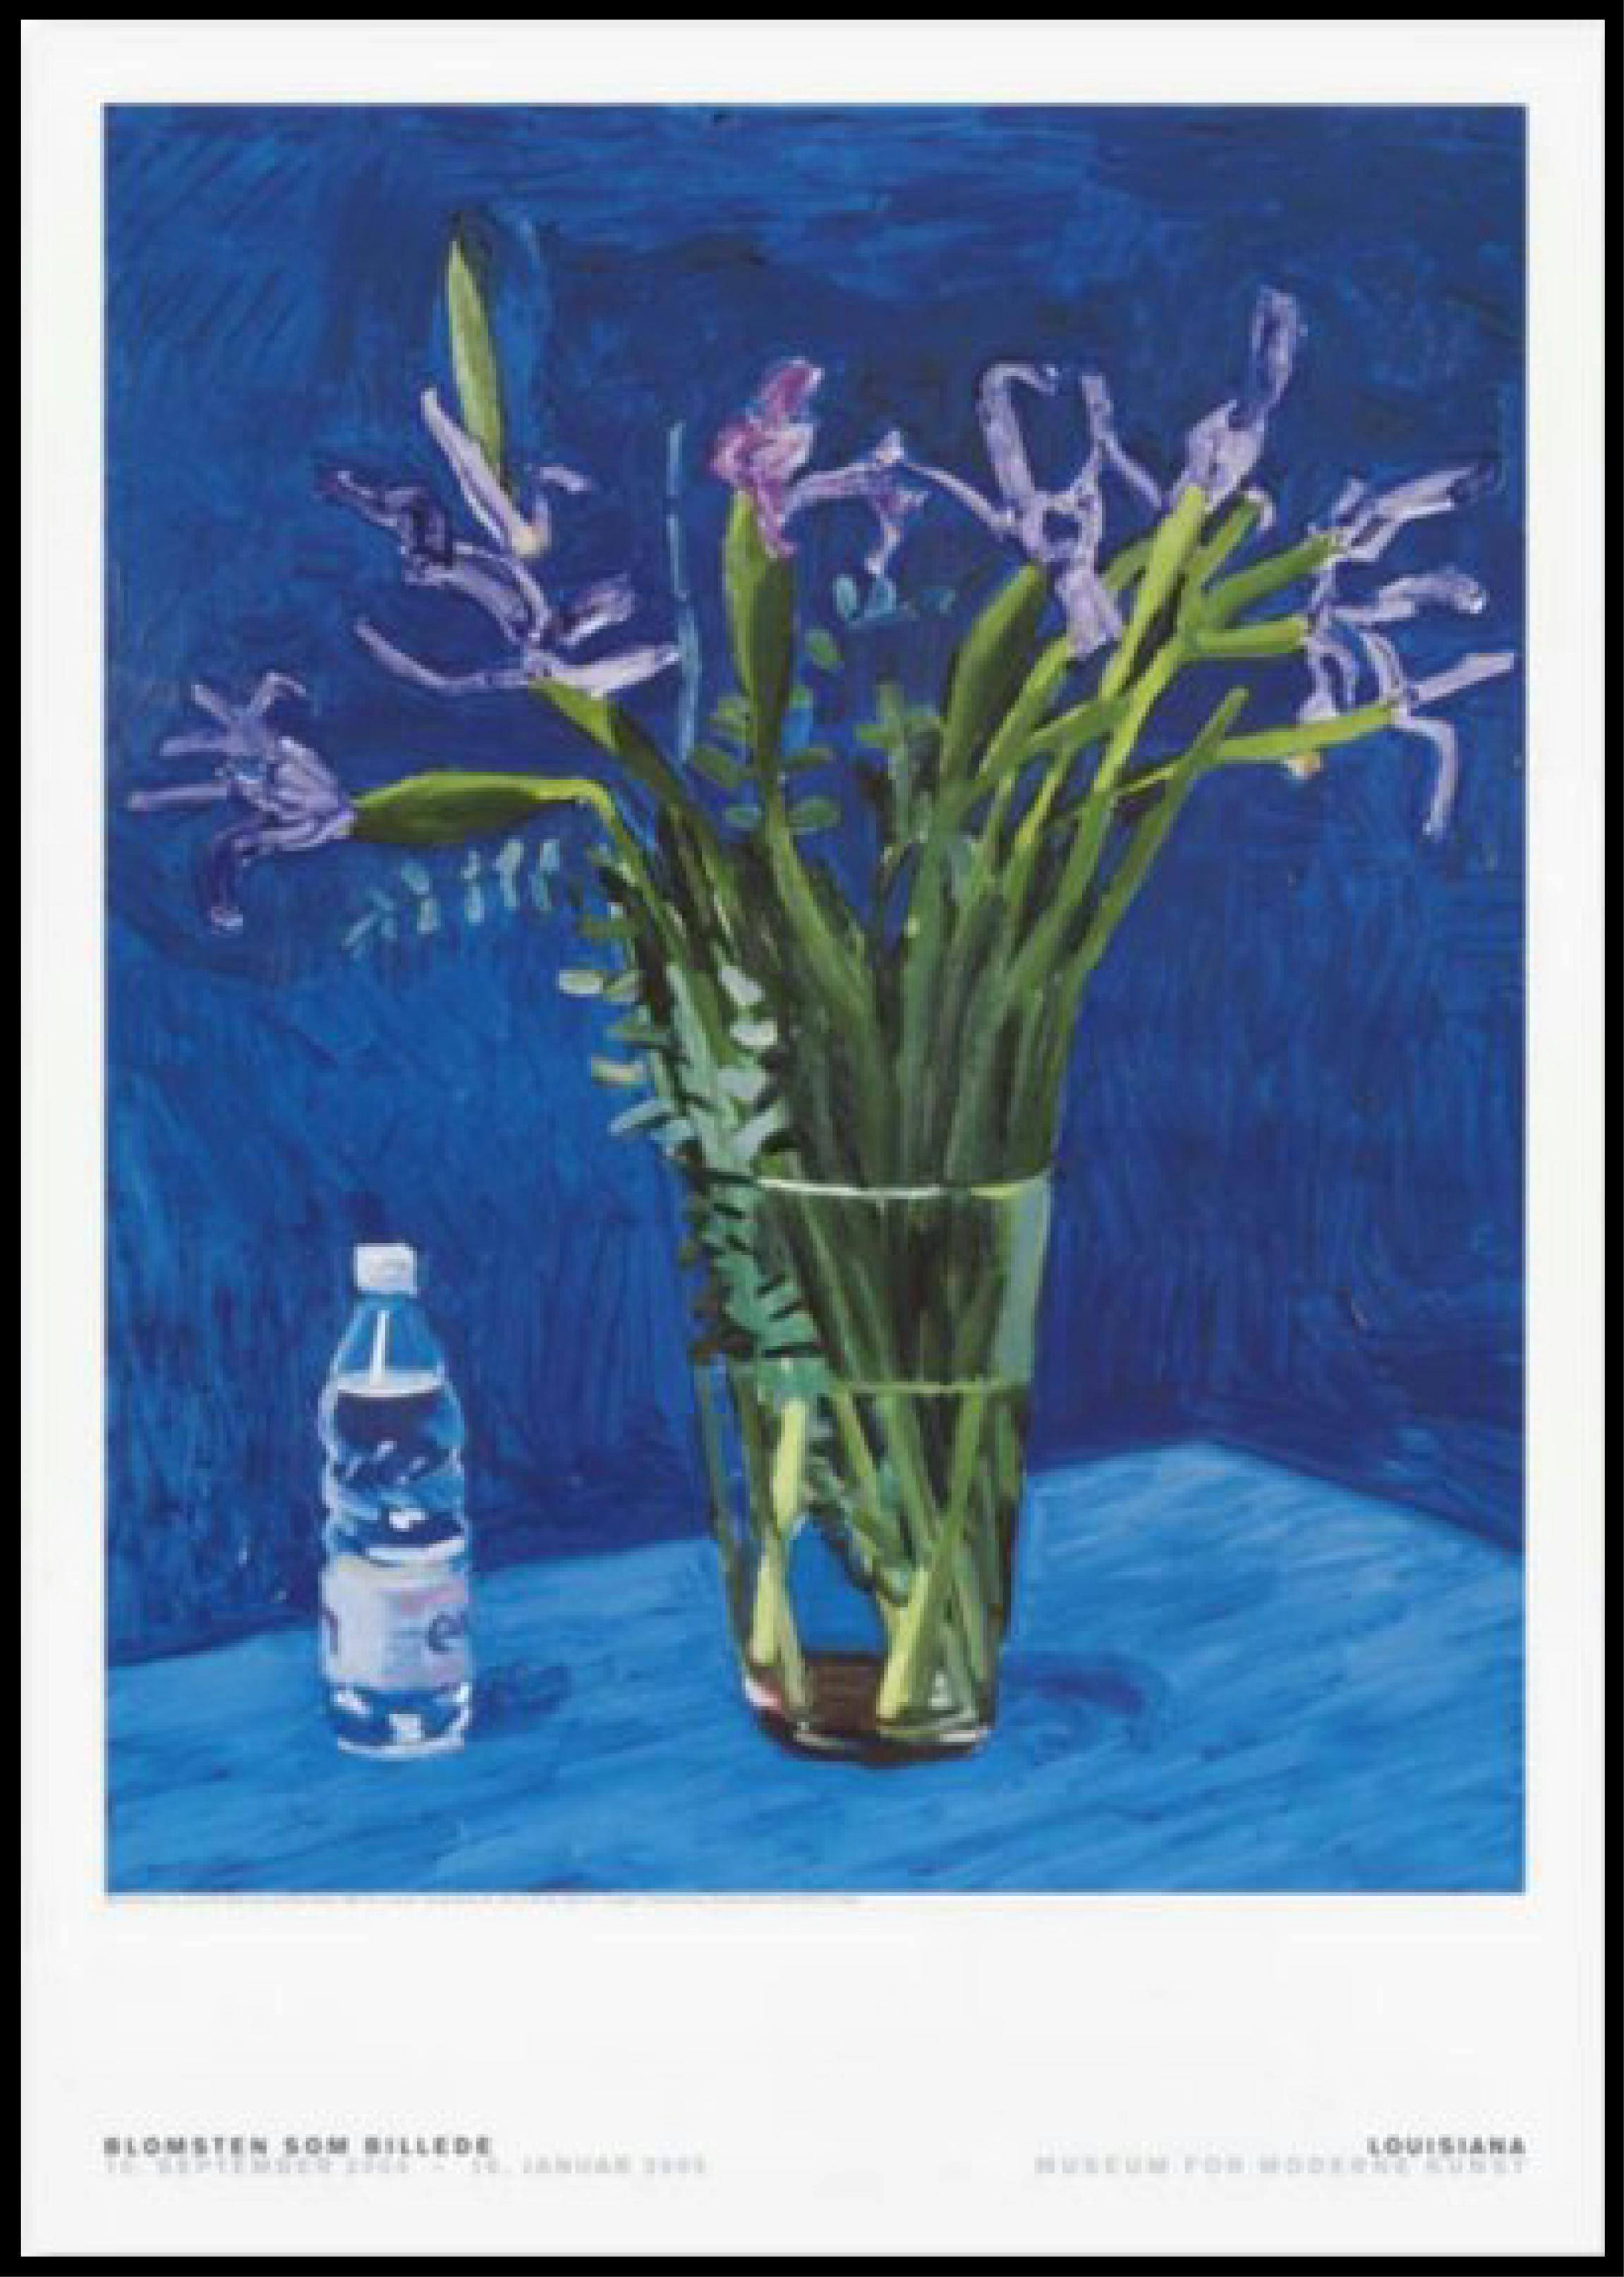 Iris with Evian Bottle, 1998 ポスター + オーダーフレーム